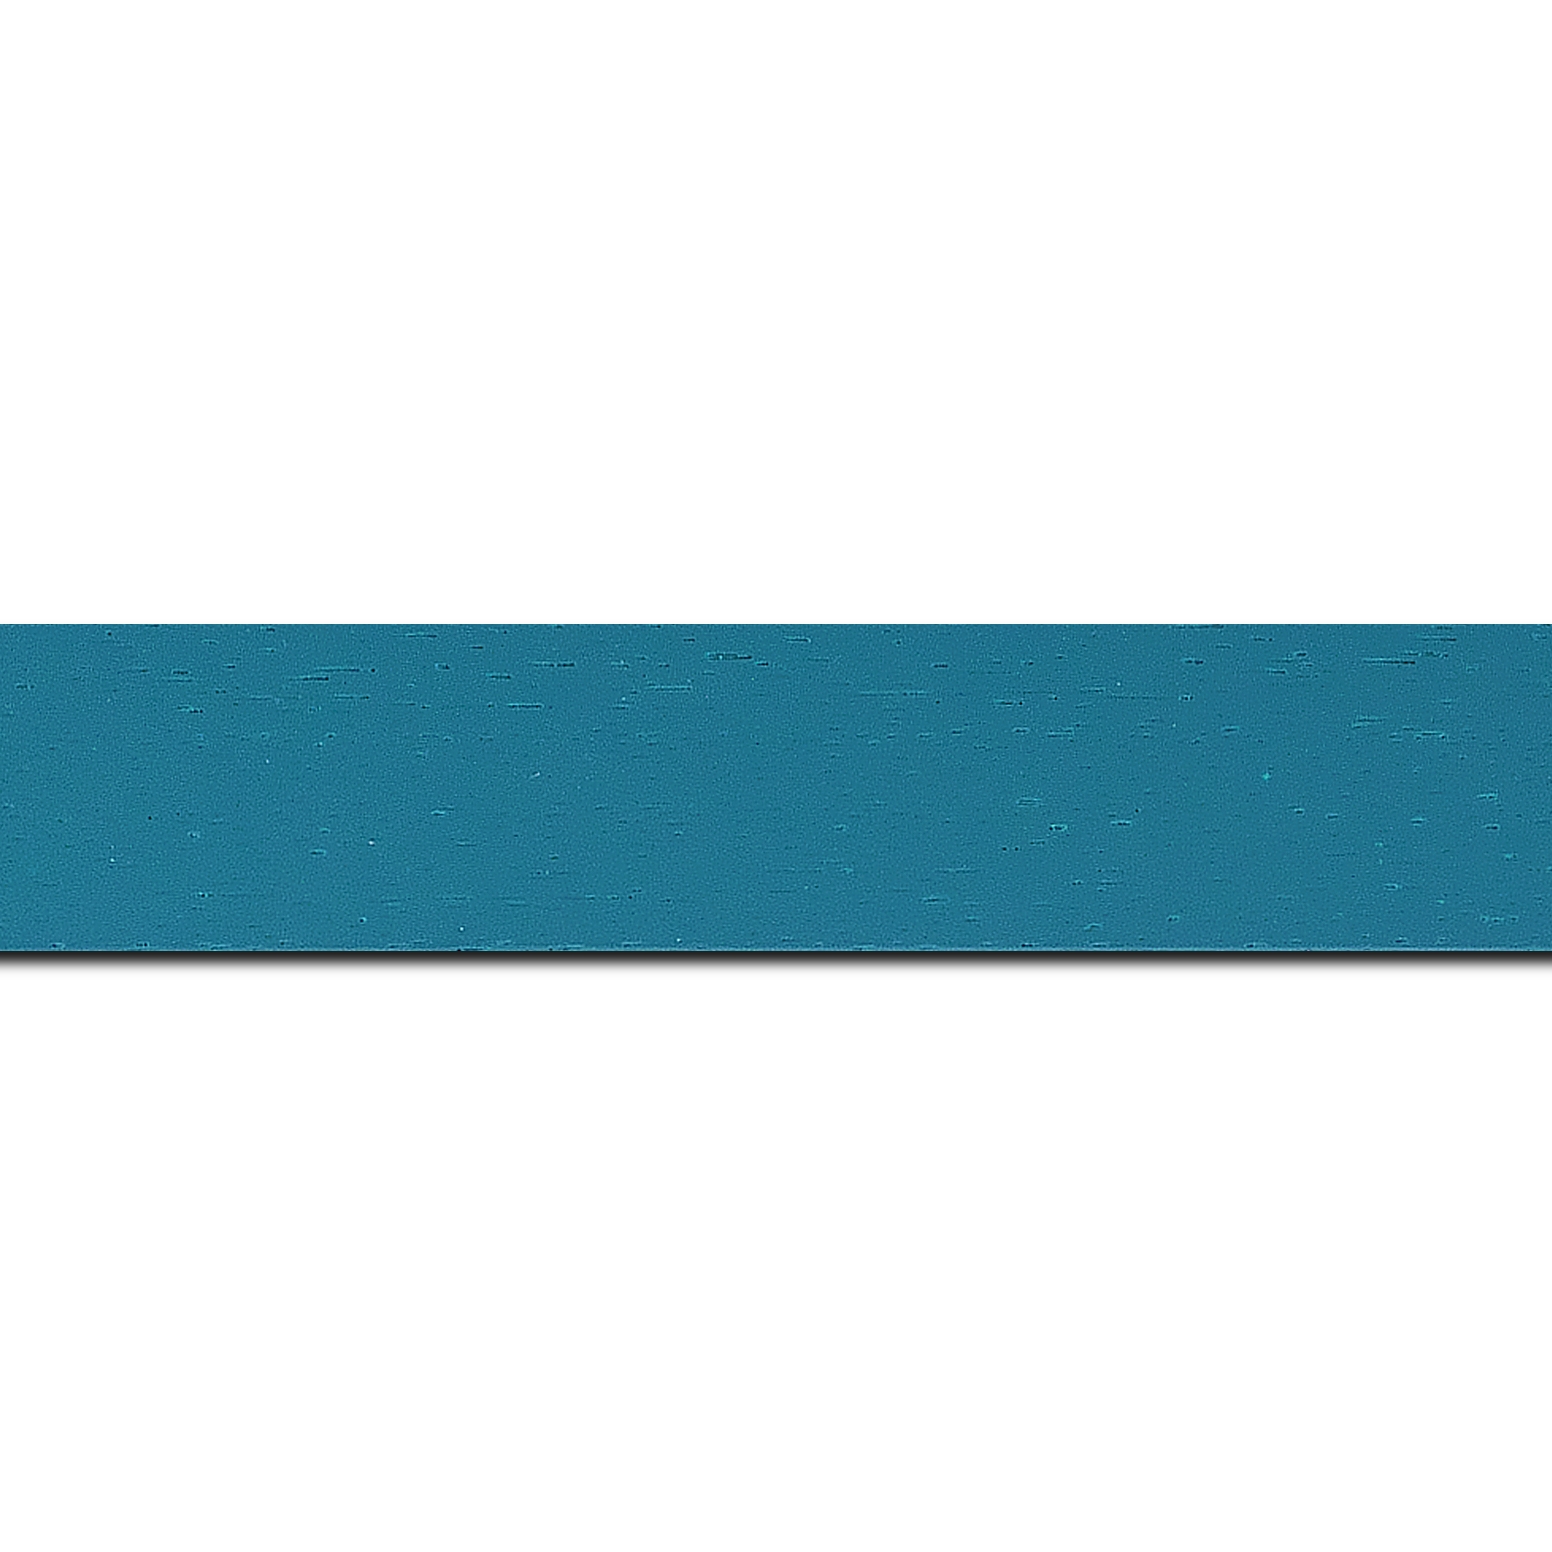 Pack par 12m, bois profil plat largeur 3cm couleur bleu turquoise satiné (longueur baguette pouvant varier entre 2.40m et 3m selon arrivage des bois)